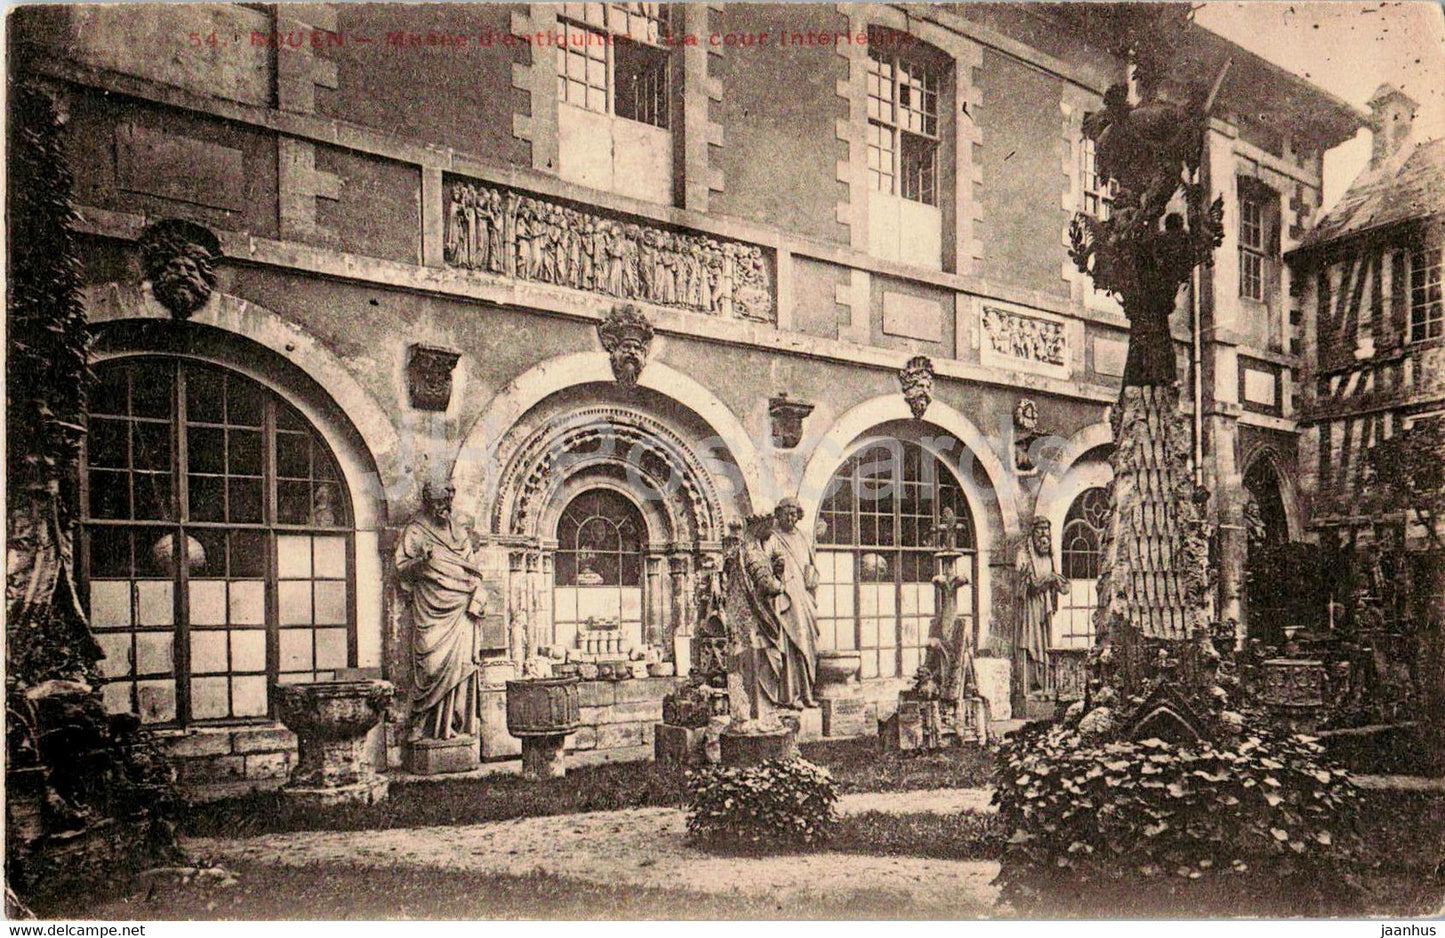 Rouen - Musee d'antiquites - La cour interieur - museum - 54 - old postcard - France - unused - JH Postcards